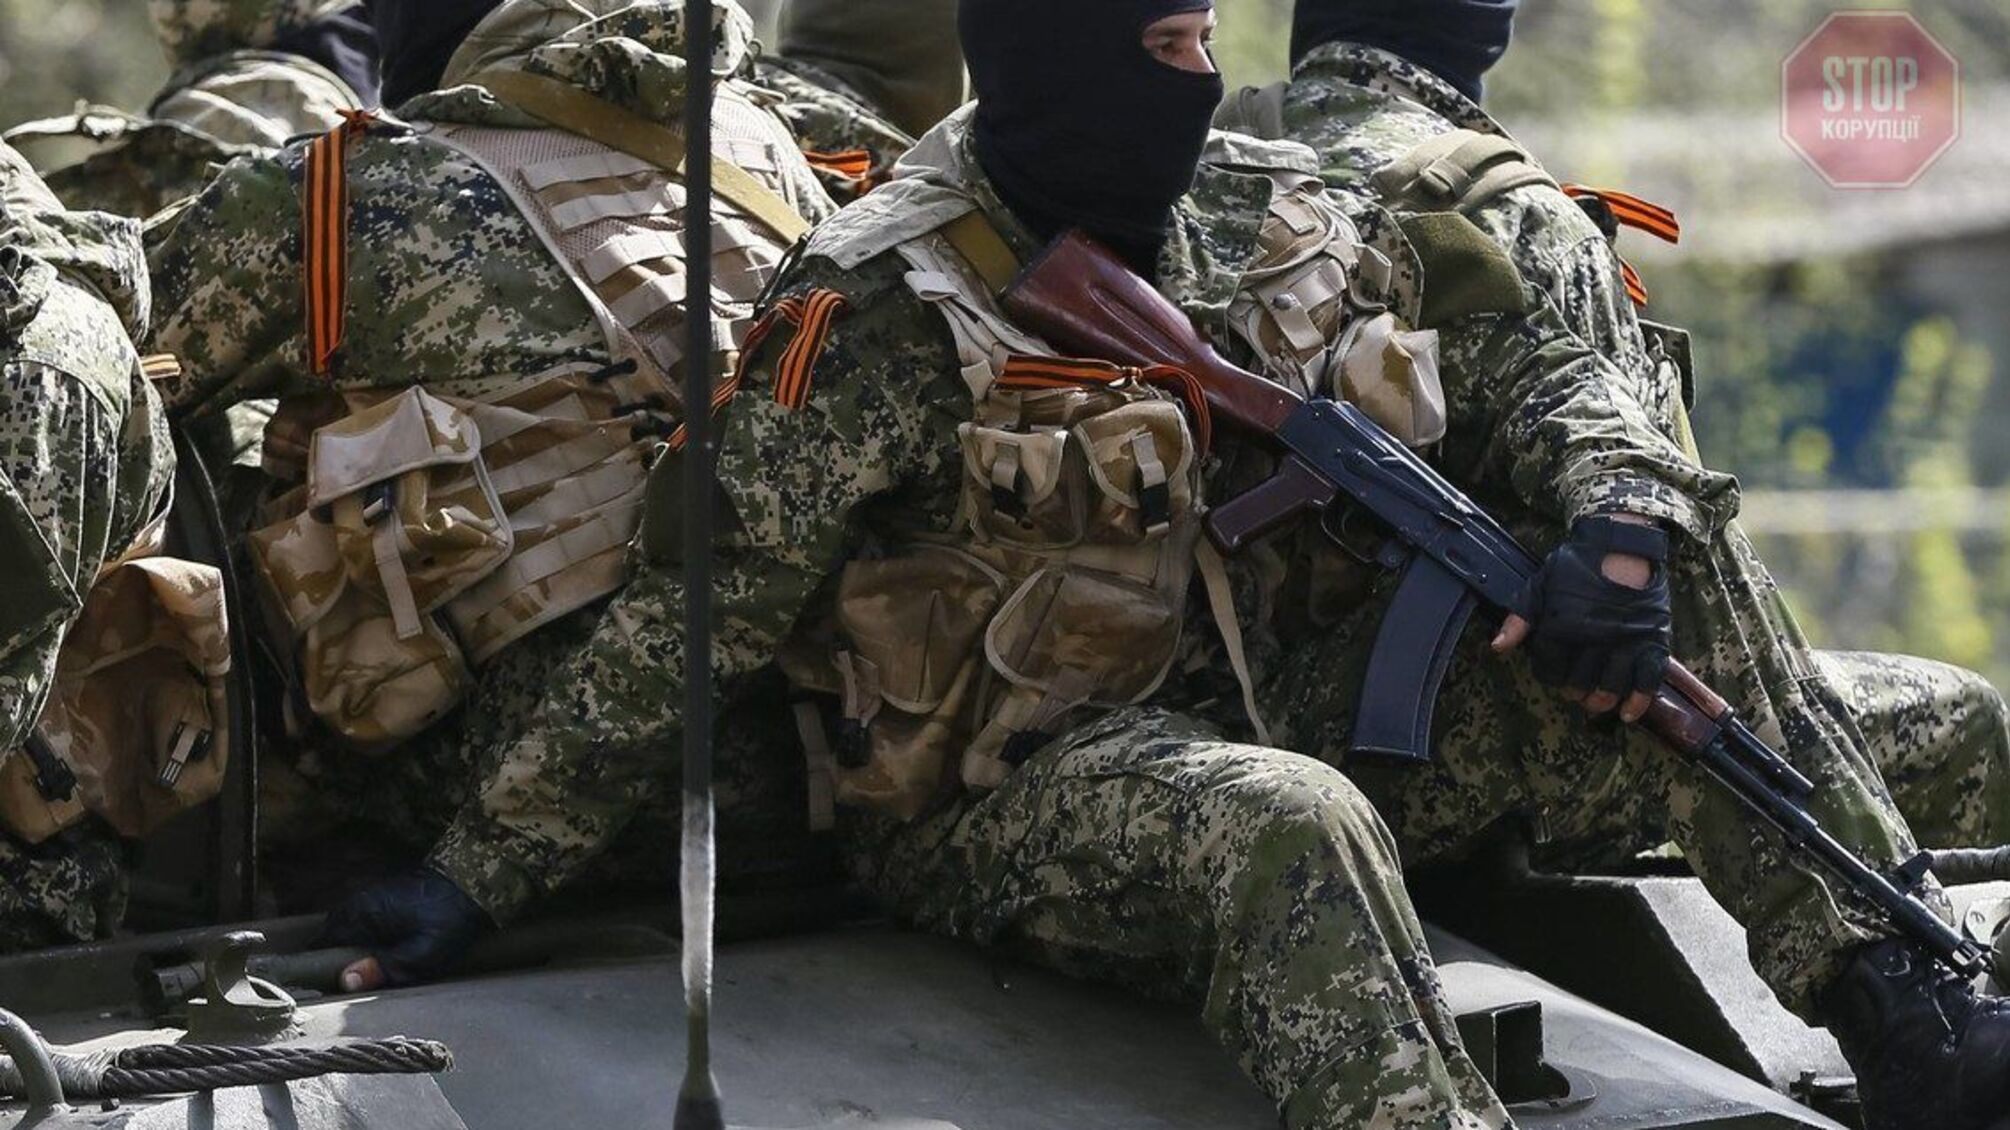 Разведка: На оккупированном Донбассе происходят столкновения между российской армией и населением